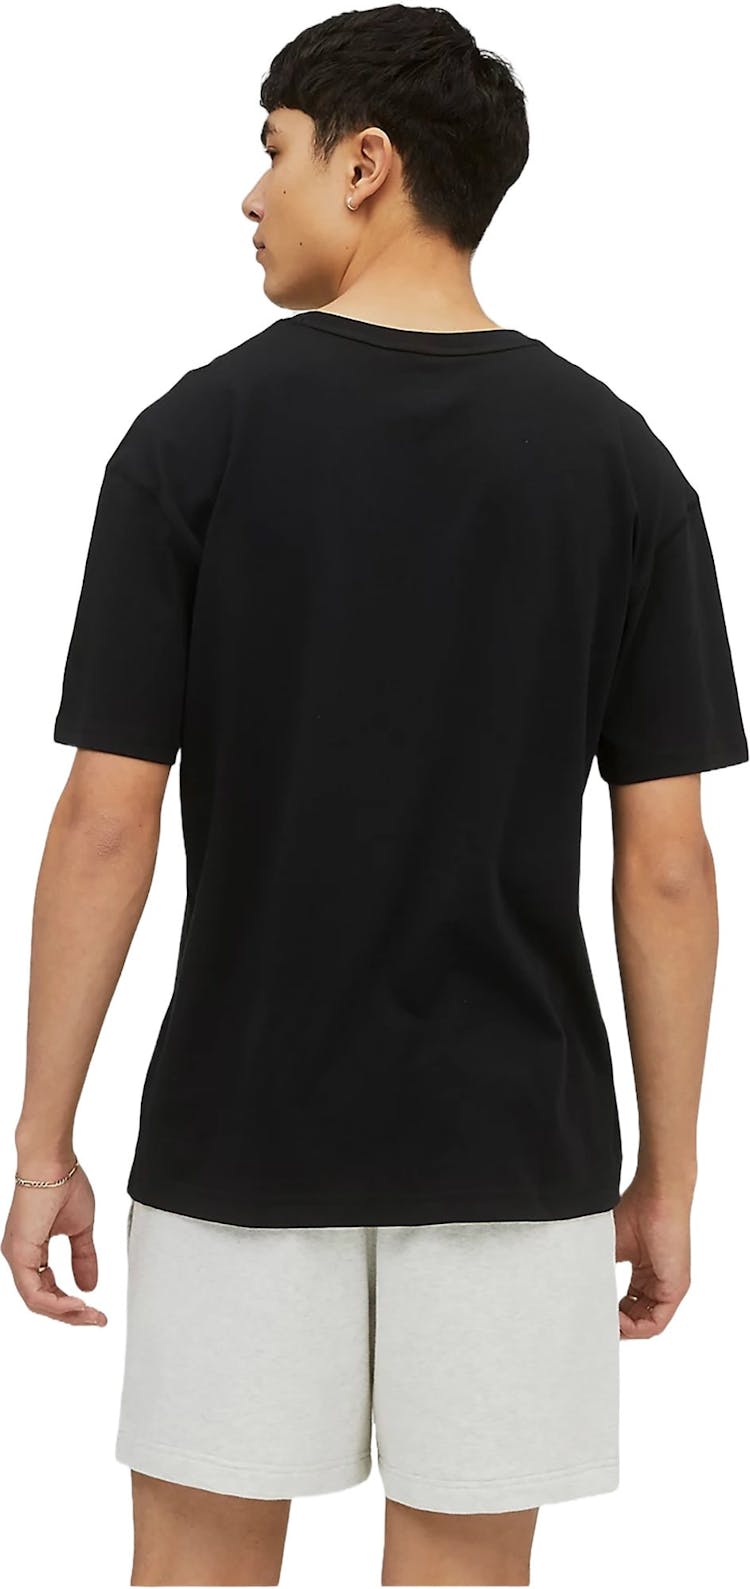 Numéro de l'image de la galerie de produits 2 pour le produit T-shirt NB Unissentials - Unisexe